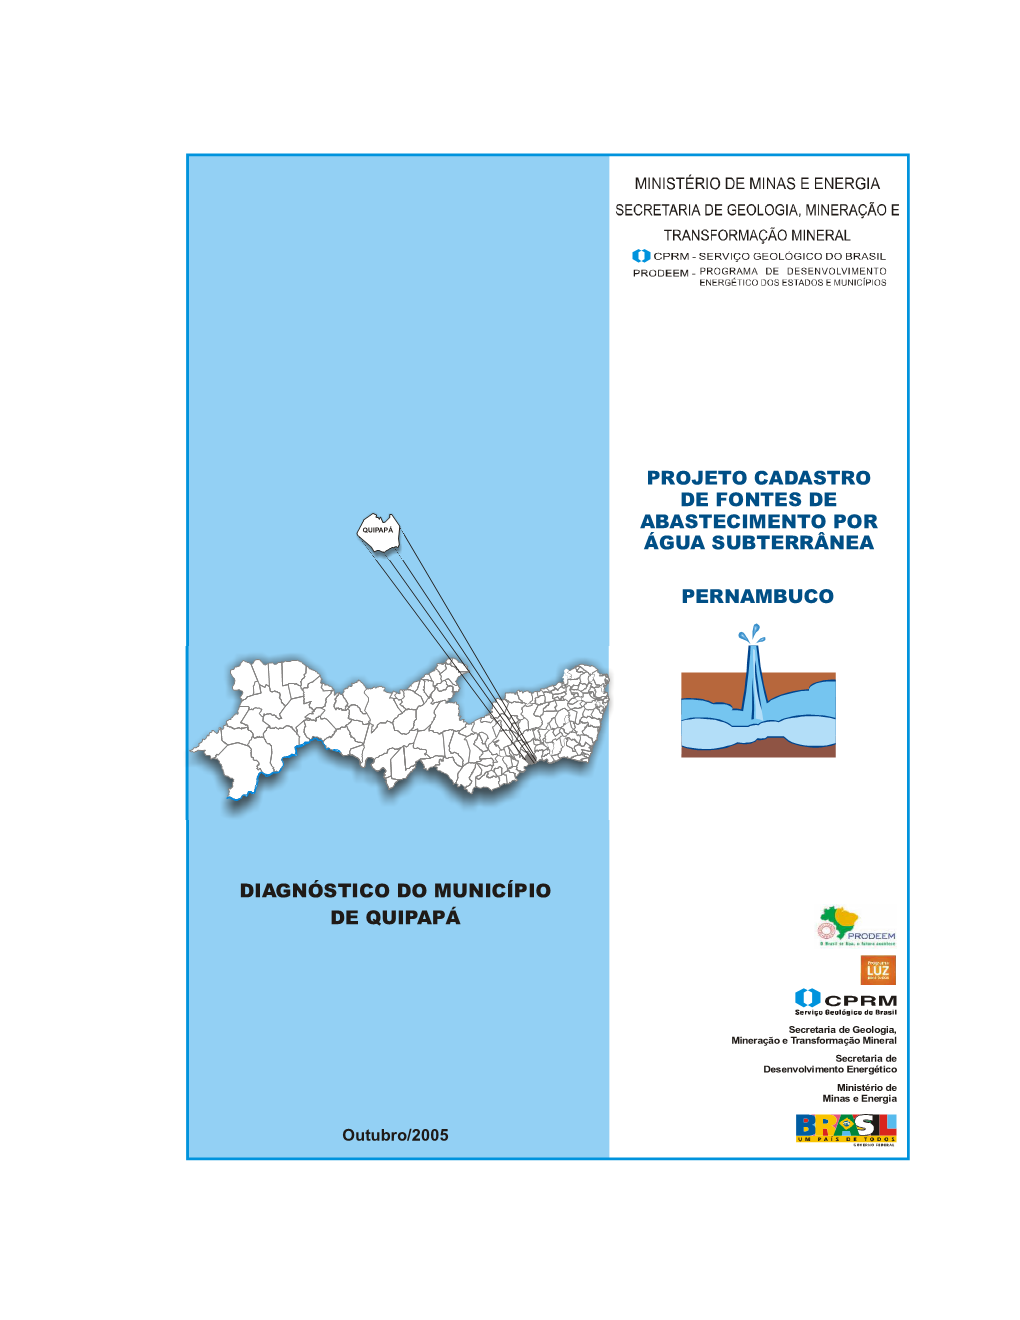 Diagnóstico Do Município De Quipapá Pernambuco Projeto Cadastro De Fontes De Abastecimento Por Água Subterrânea